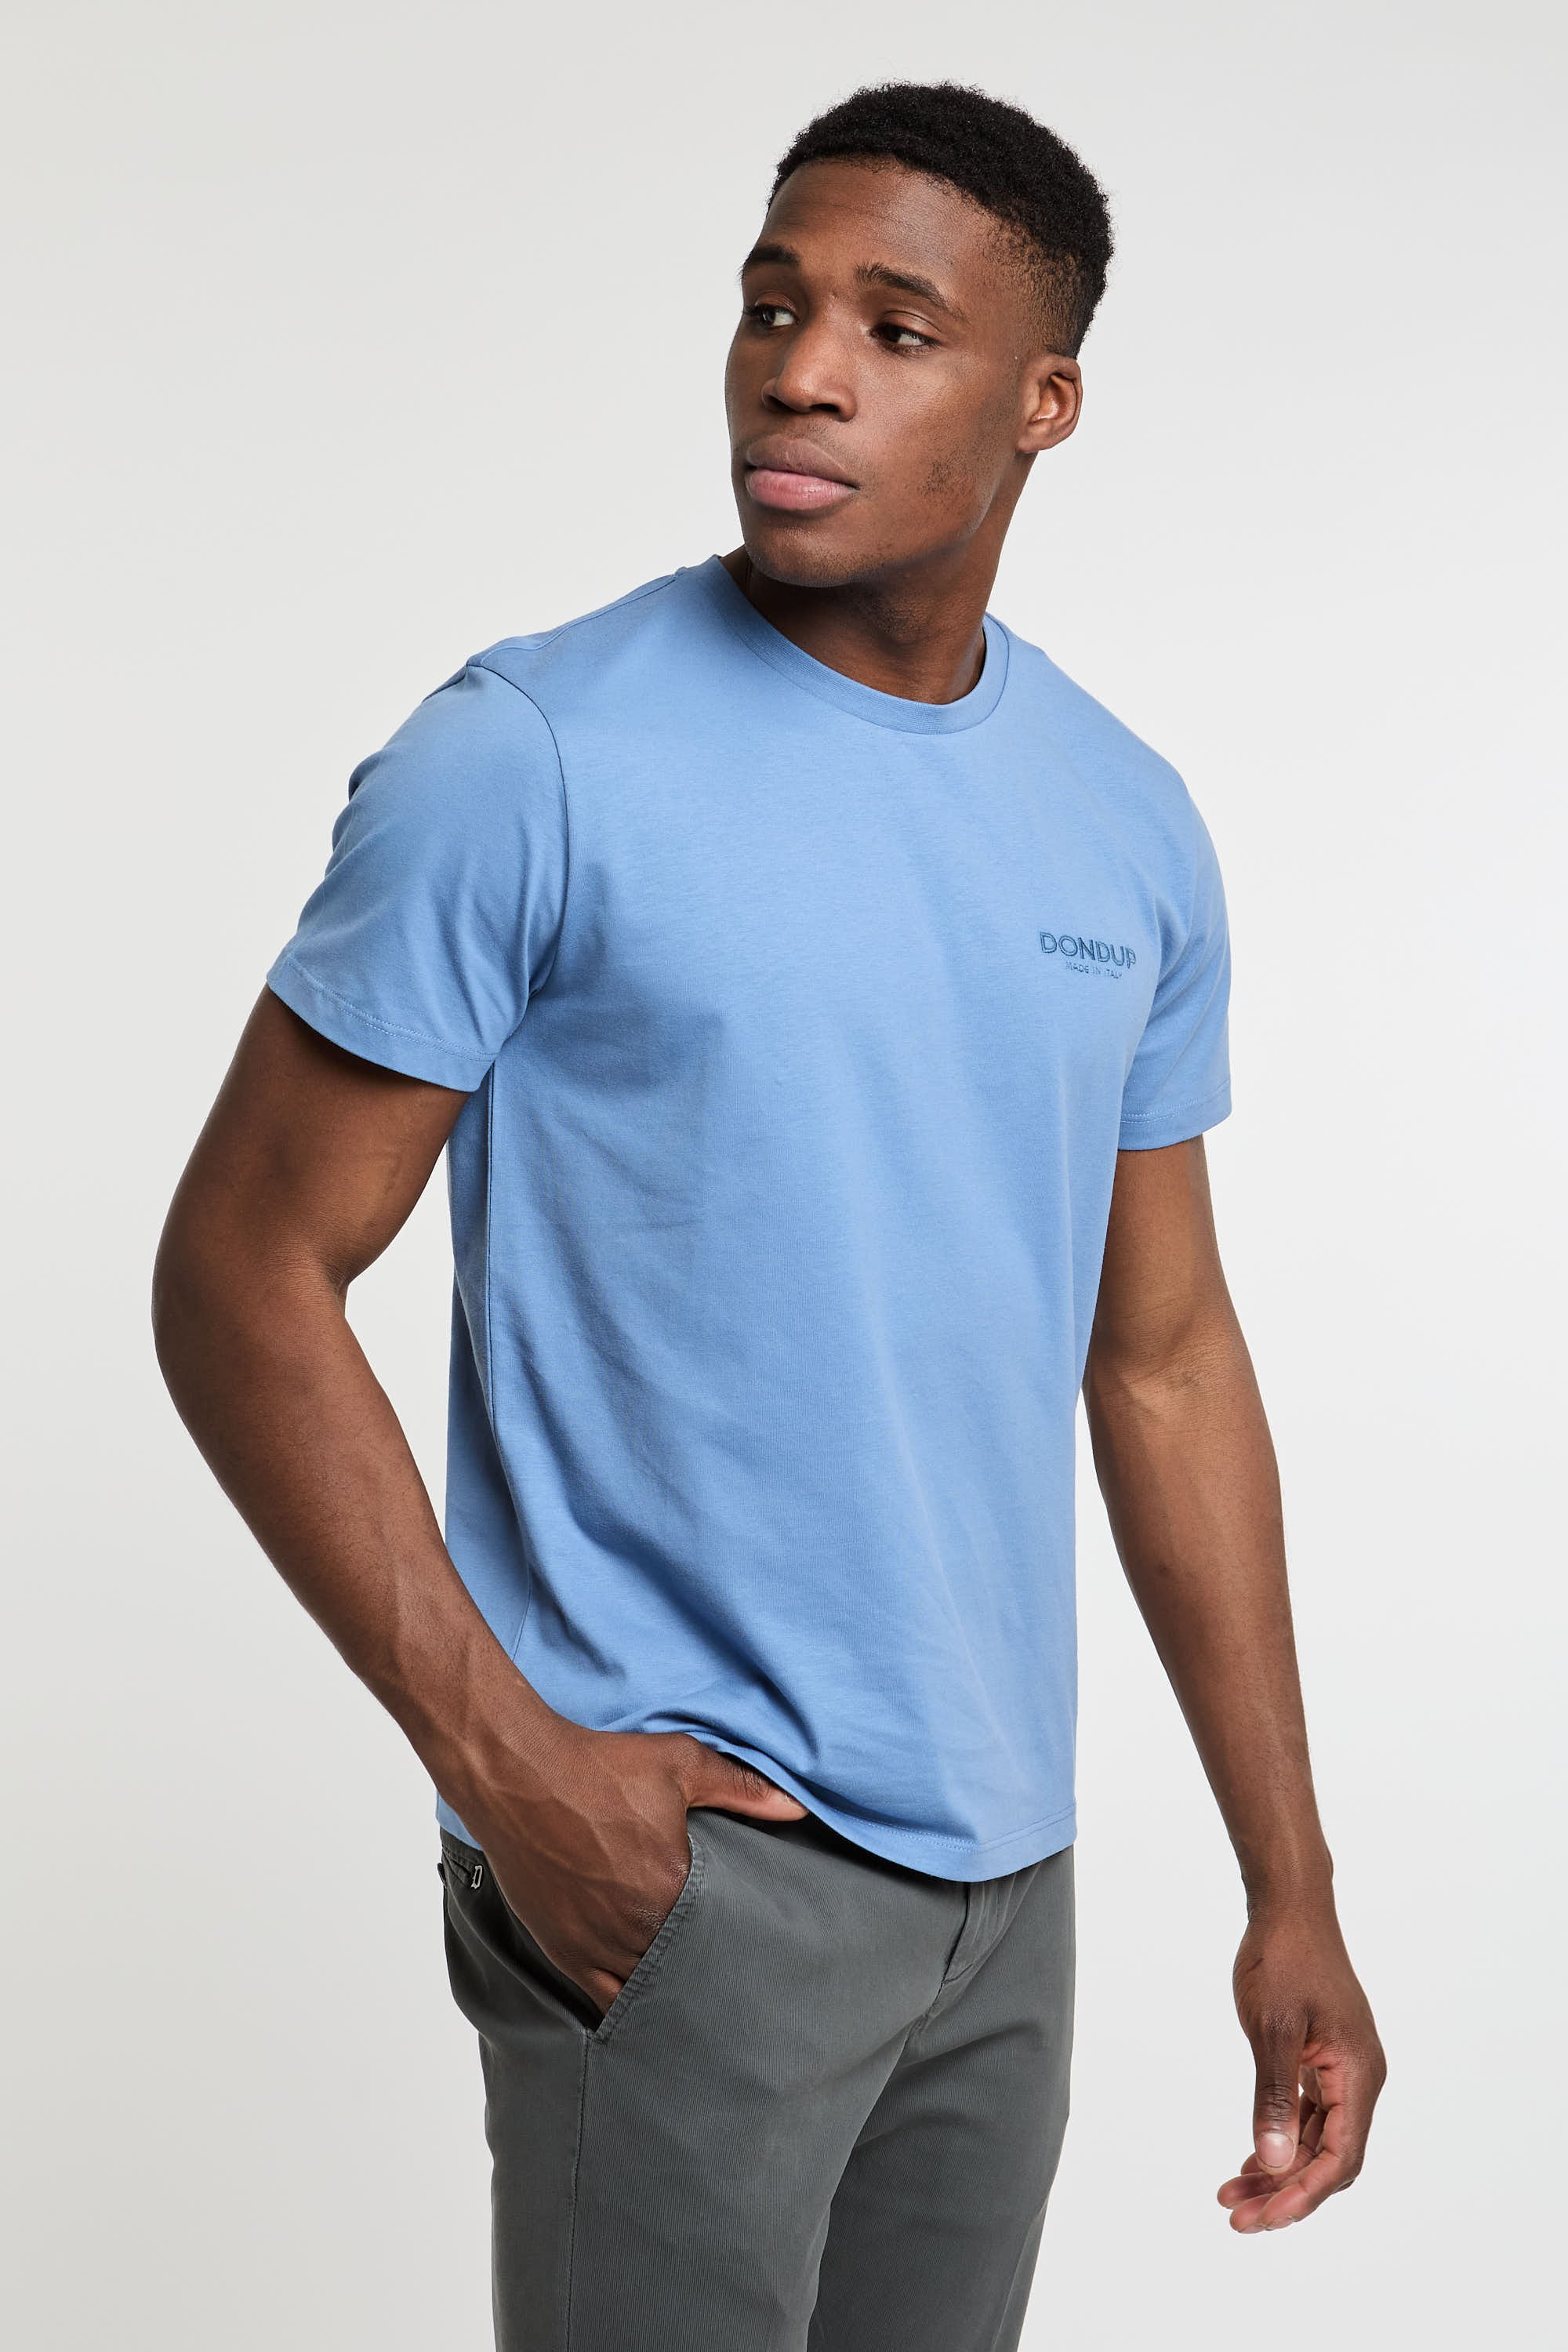 Dondup T-Shirt Cotton Light Blue-4